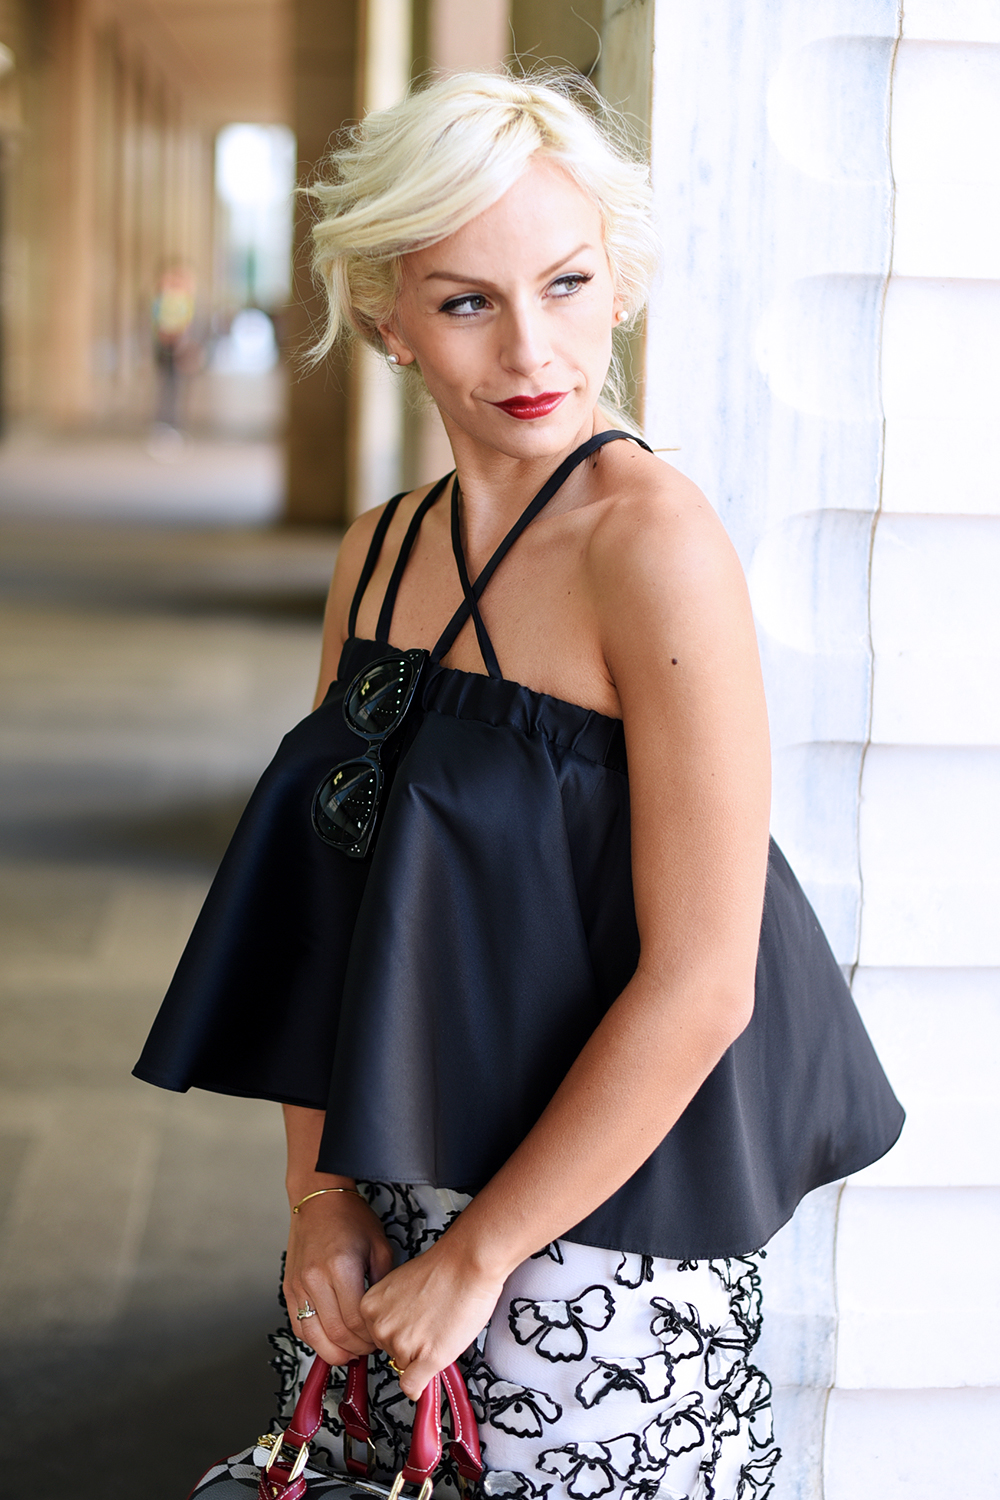 rcadia Bags borse, gonne lunghe, come indossare una gonna lunga, top nero, tendenze primavera 2016 - outfit fashion blogger It-Girl by Eleonora Petrella